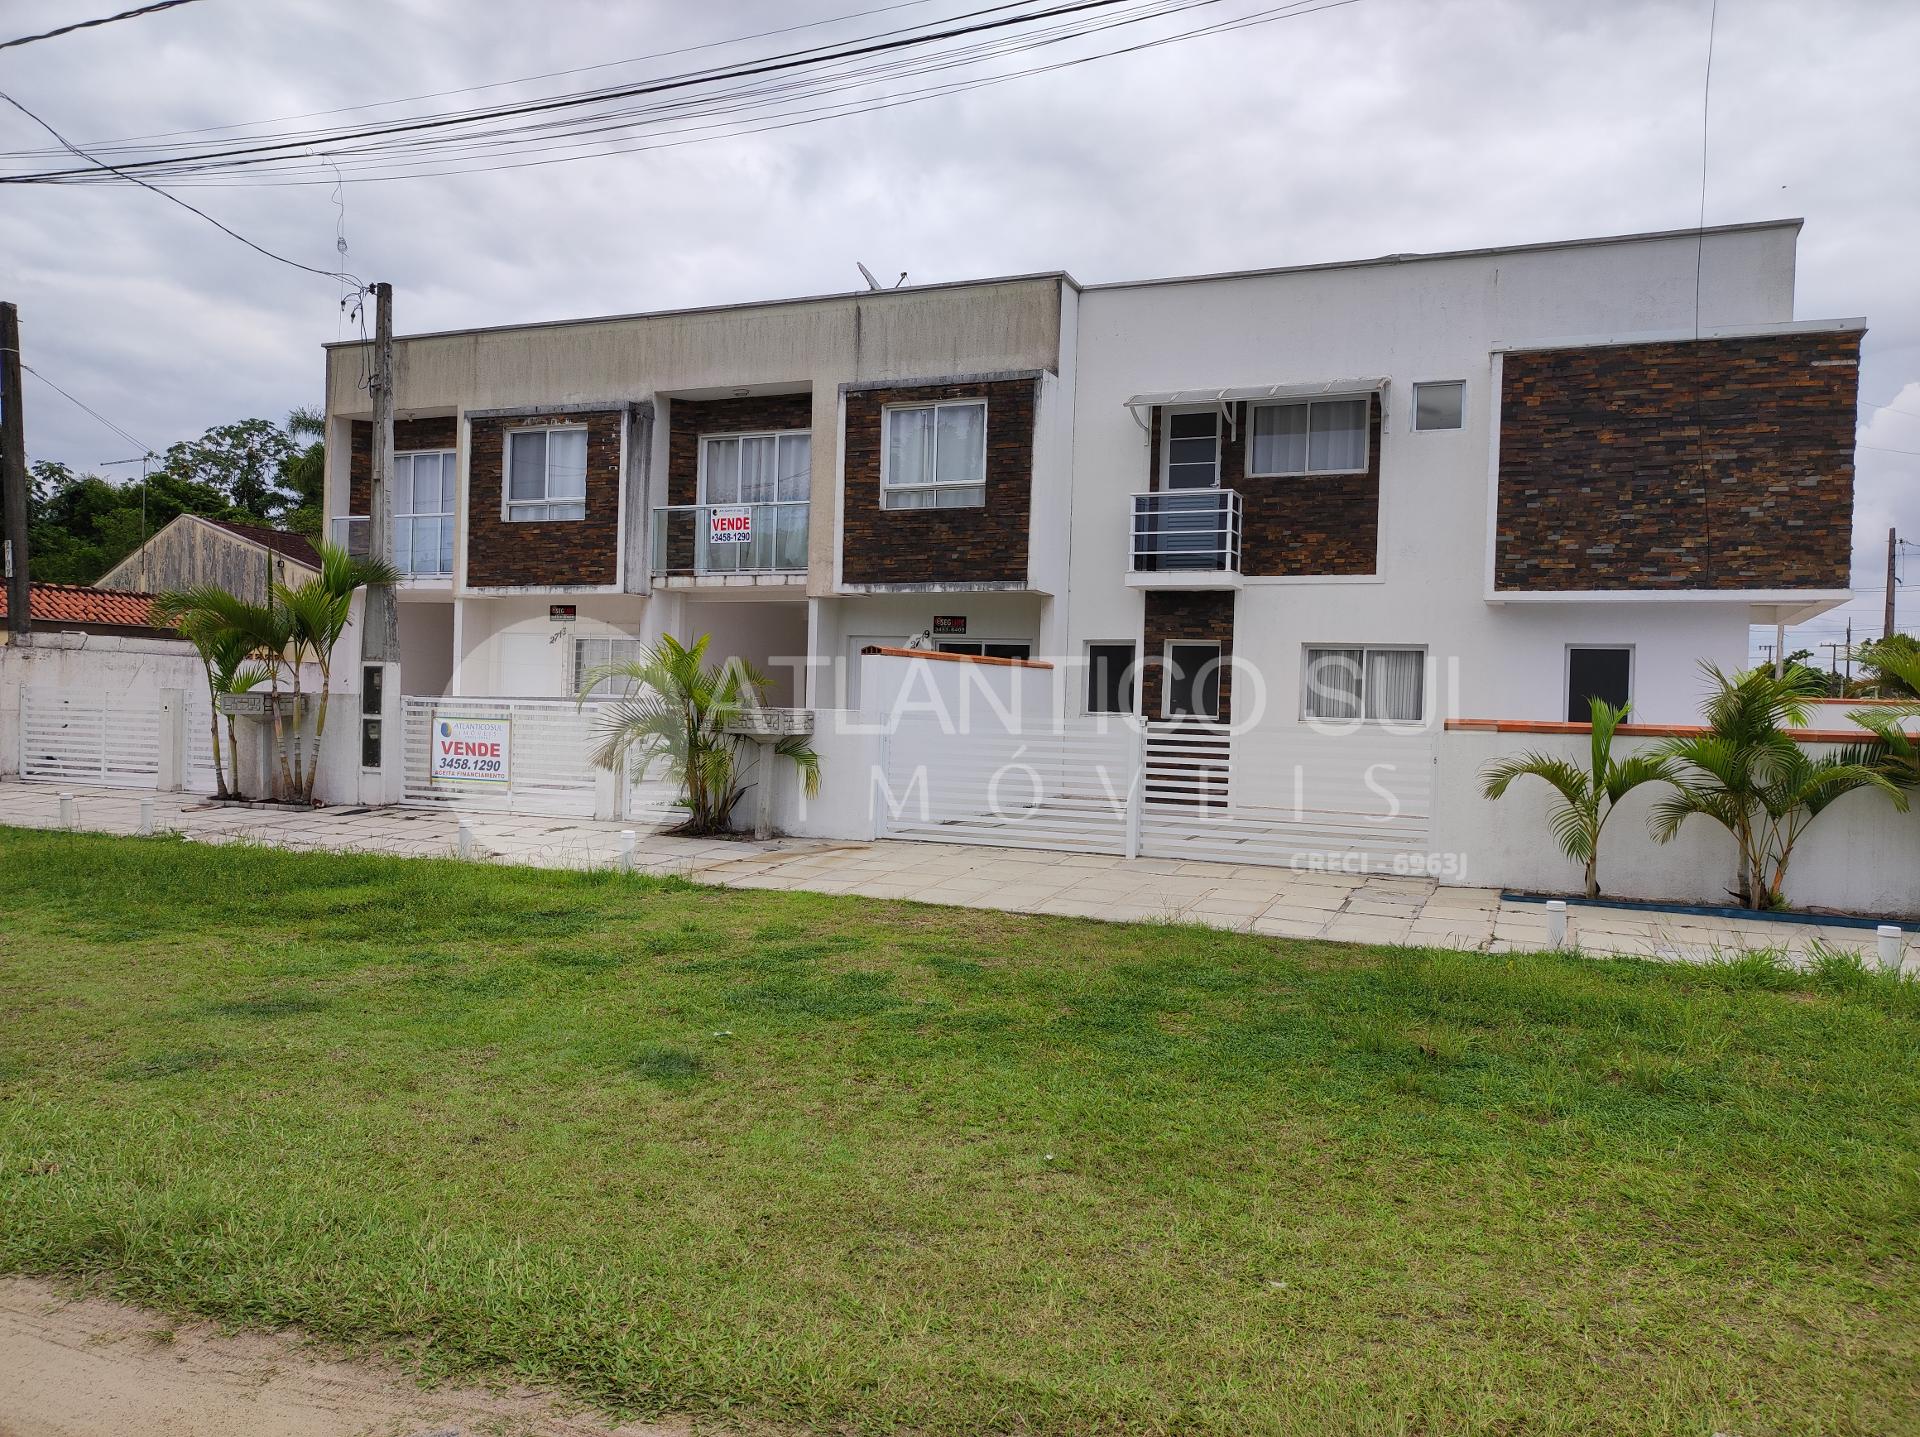 Sobrado com 3 dormitórios à venda, Praia de Leste, PONTAL DO P...